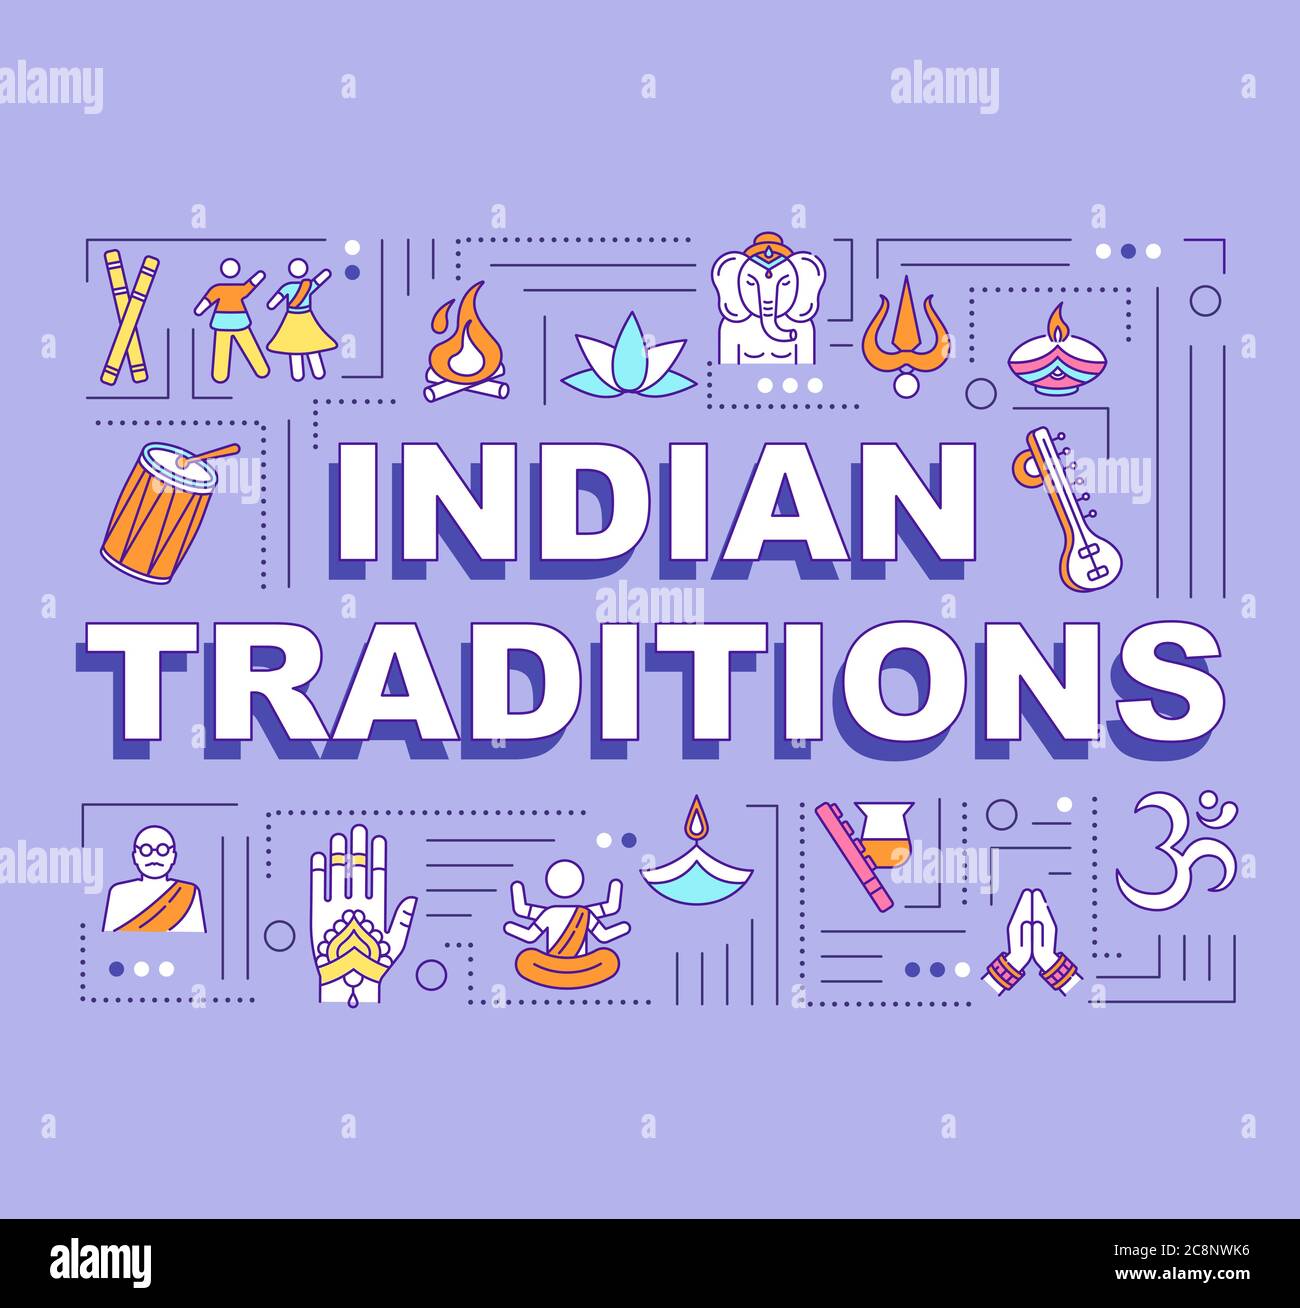 Banner concetti di parole tradizioni indiane. Feste native e festival culturali dell'infografia indiana con icone lineari su sfondo viola. Isolato Illustrazione Vettoriale